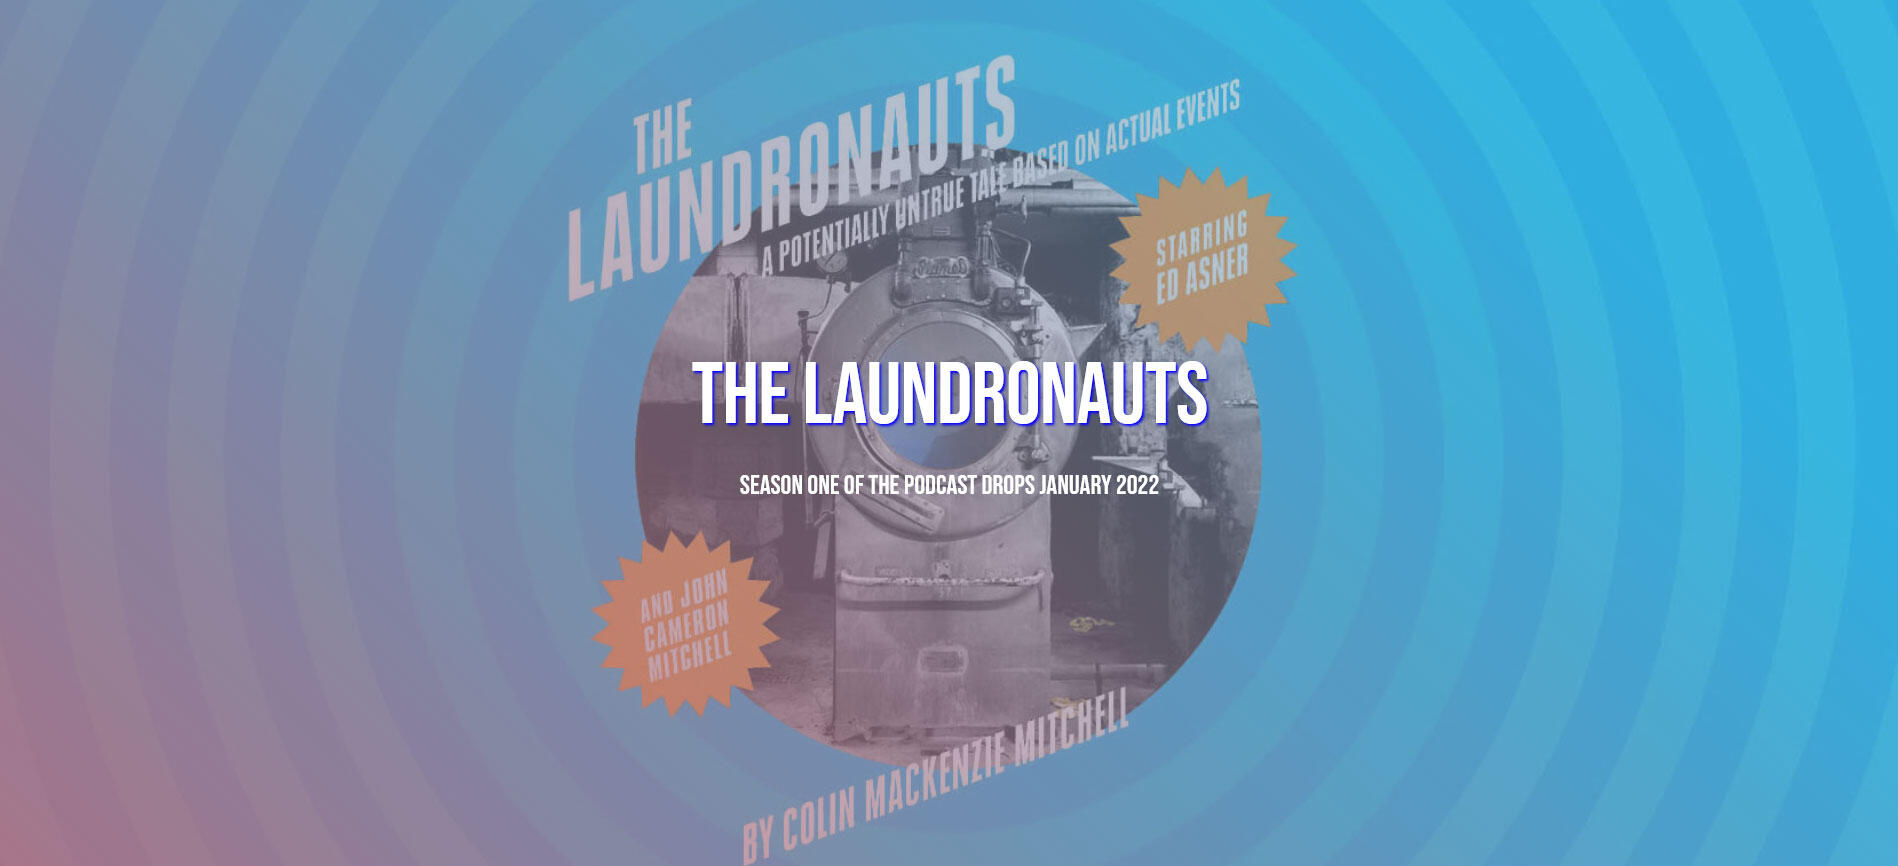 Laundronauts Carrd website